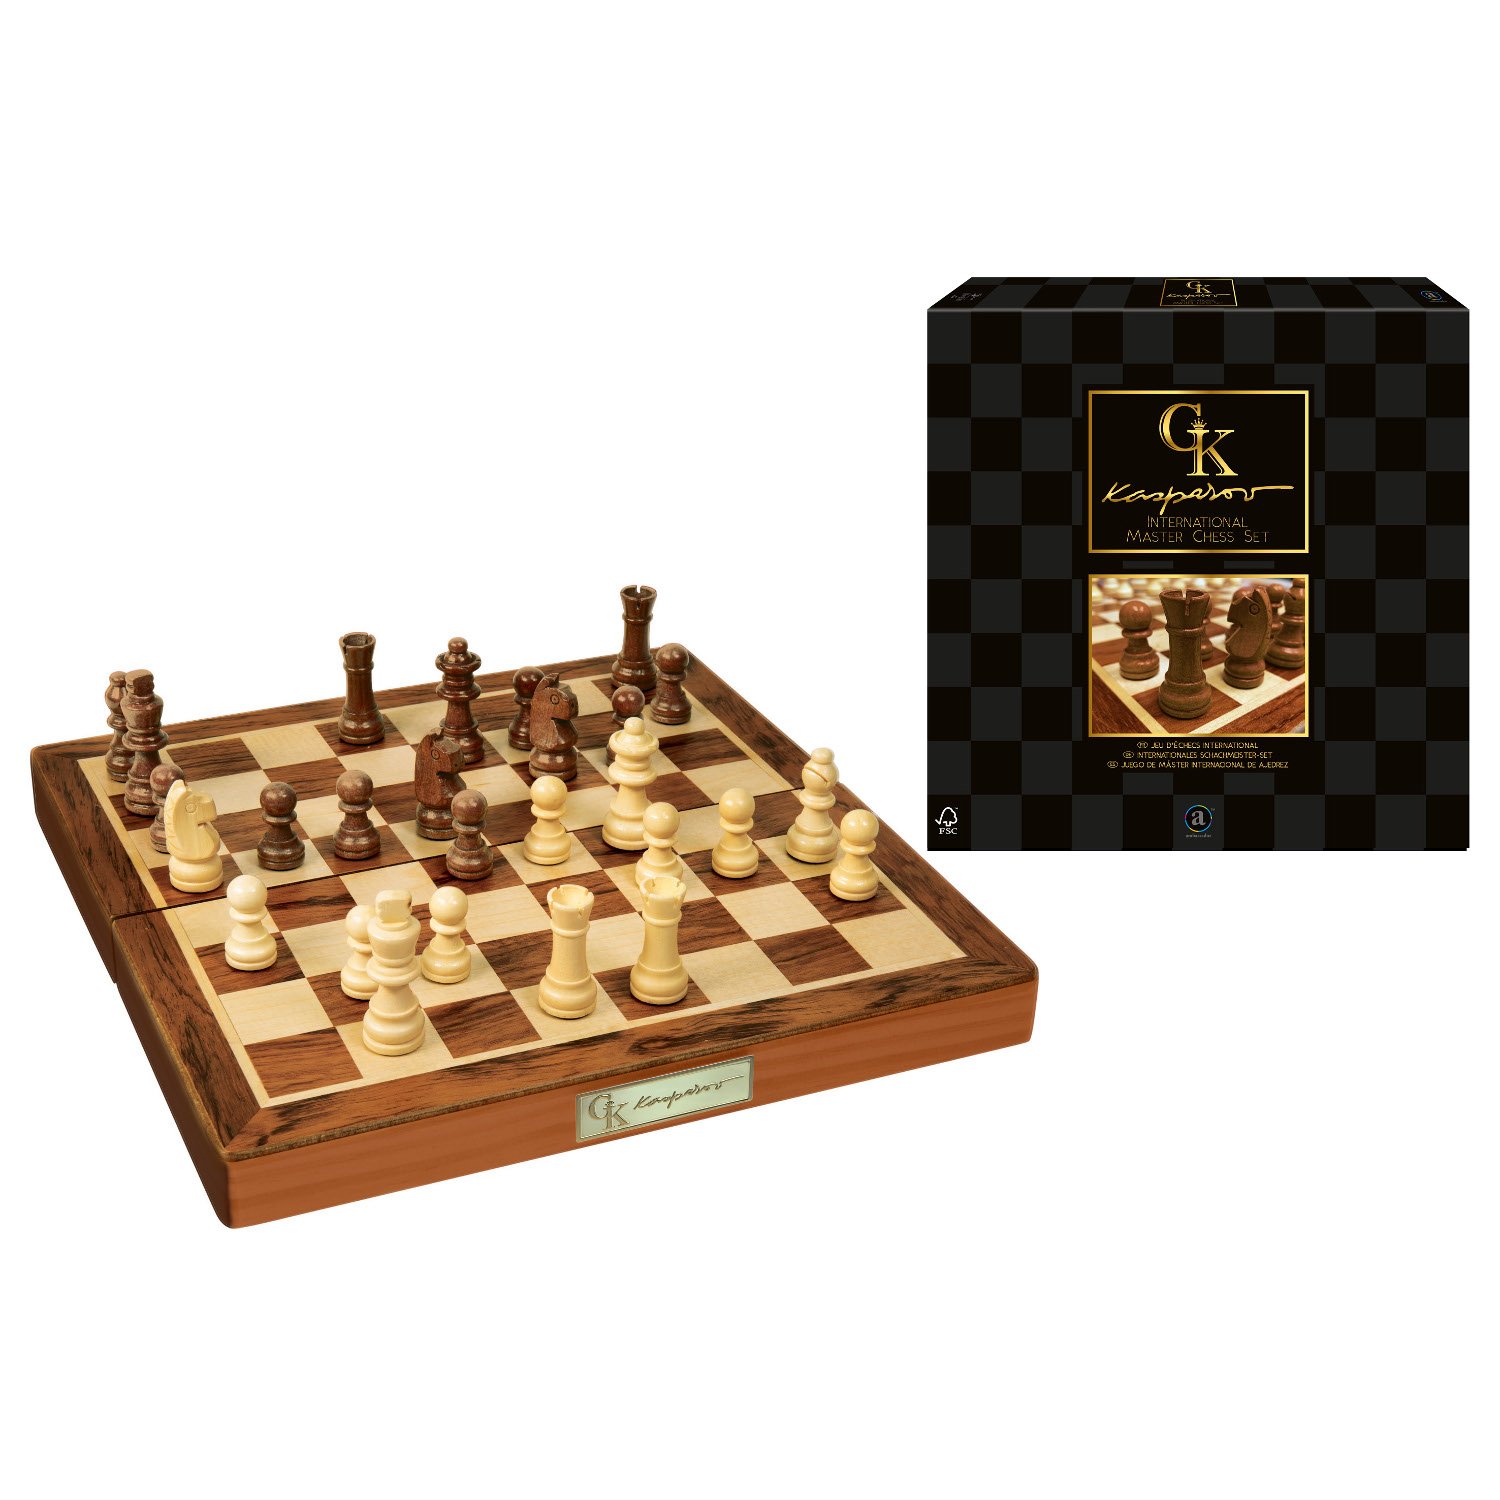 Folding Wood International Chess Board Game International Chess